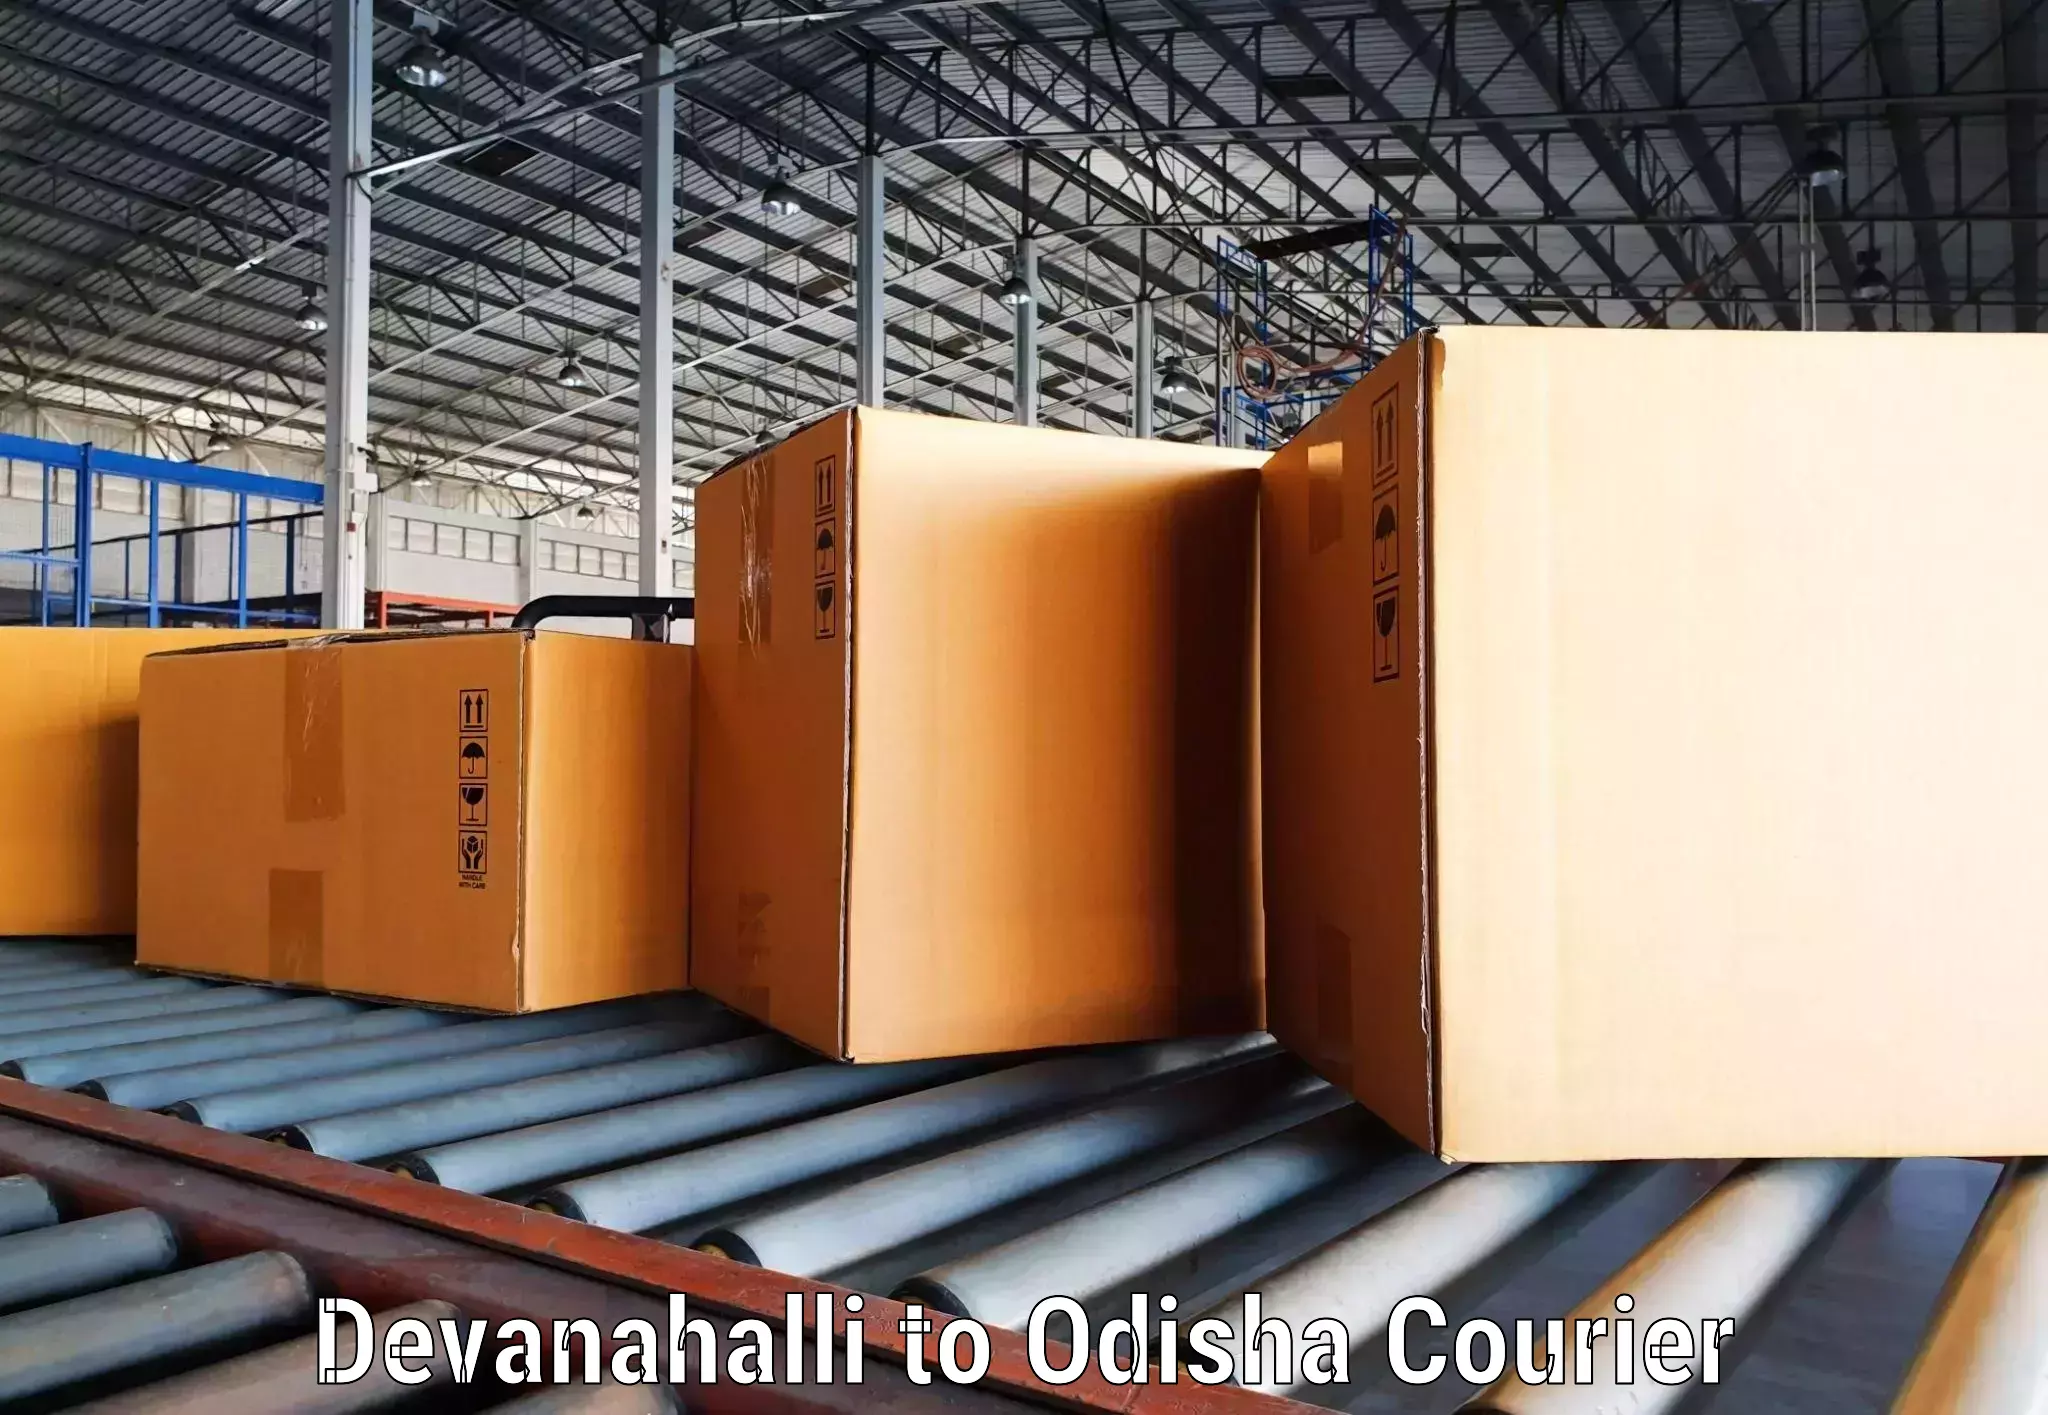 High-speed parcel service Devanahalli to Jaleswar